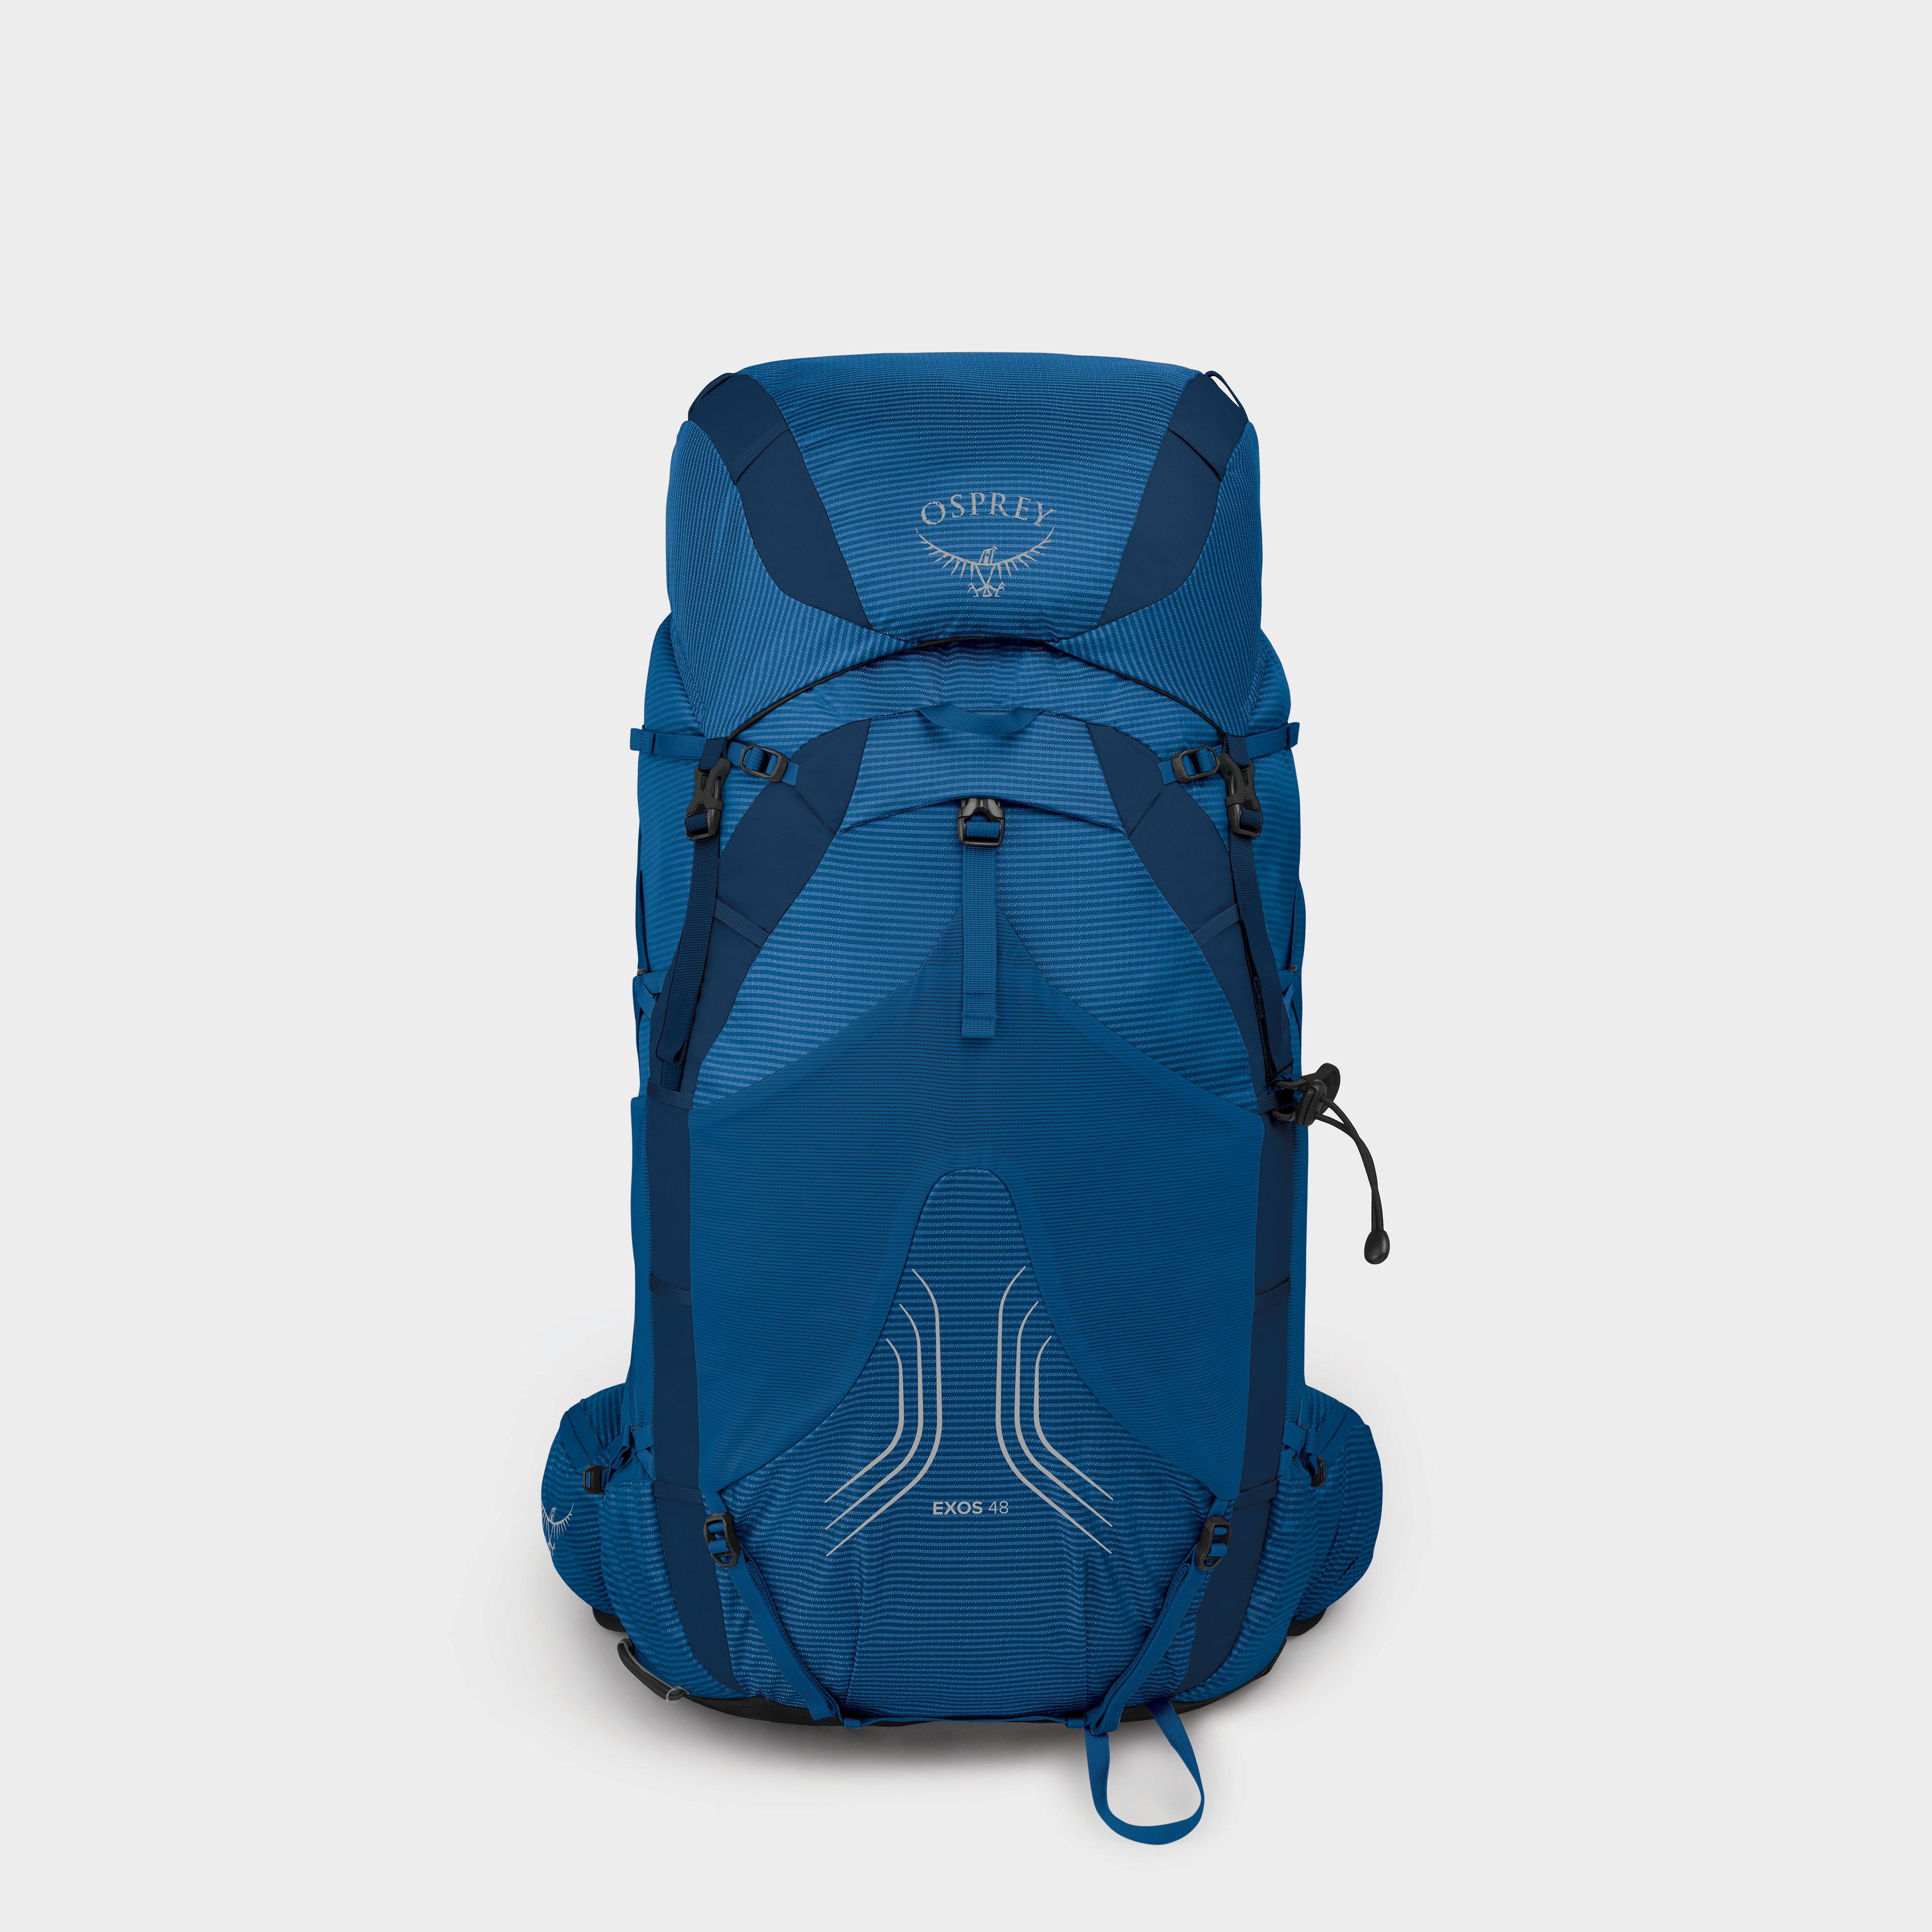 Osprey Mens Exos 48l Backpack - Blue/blue  Blue/blue